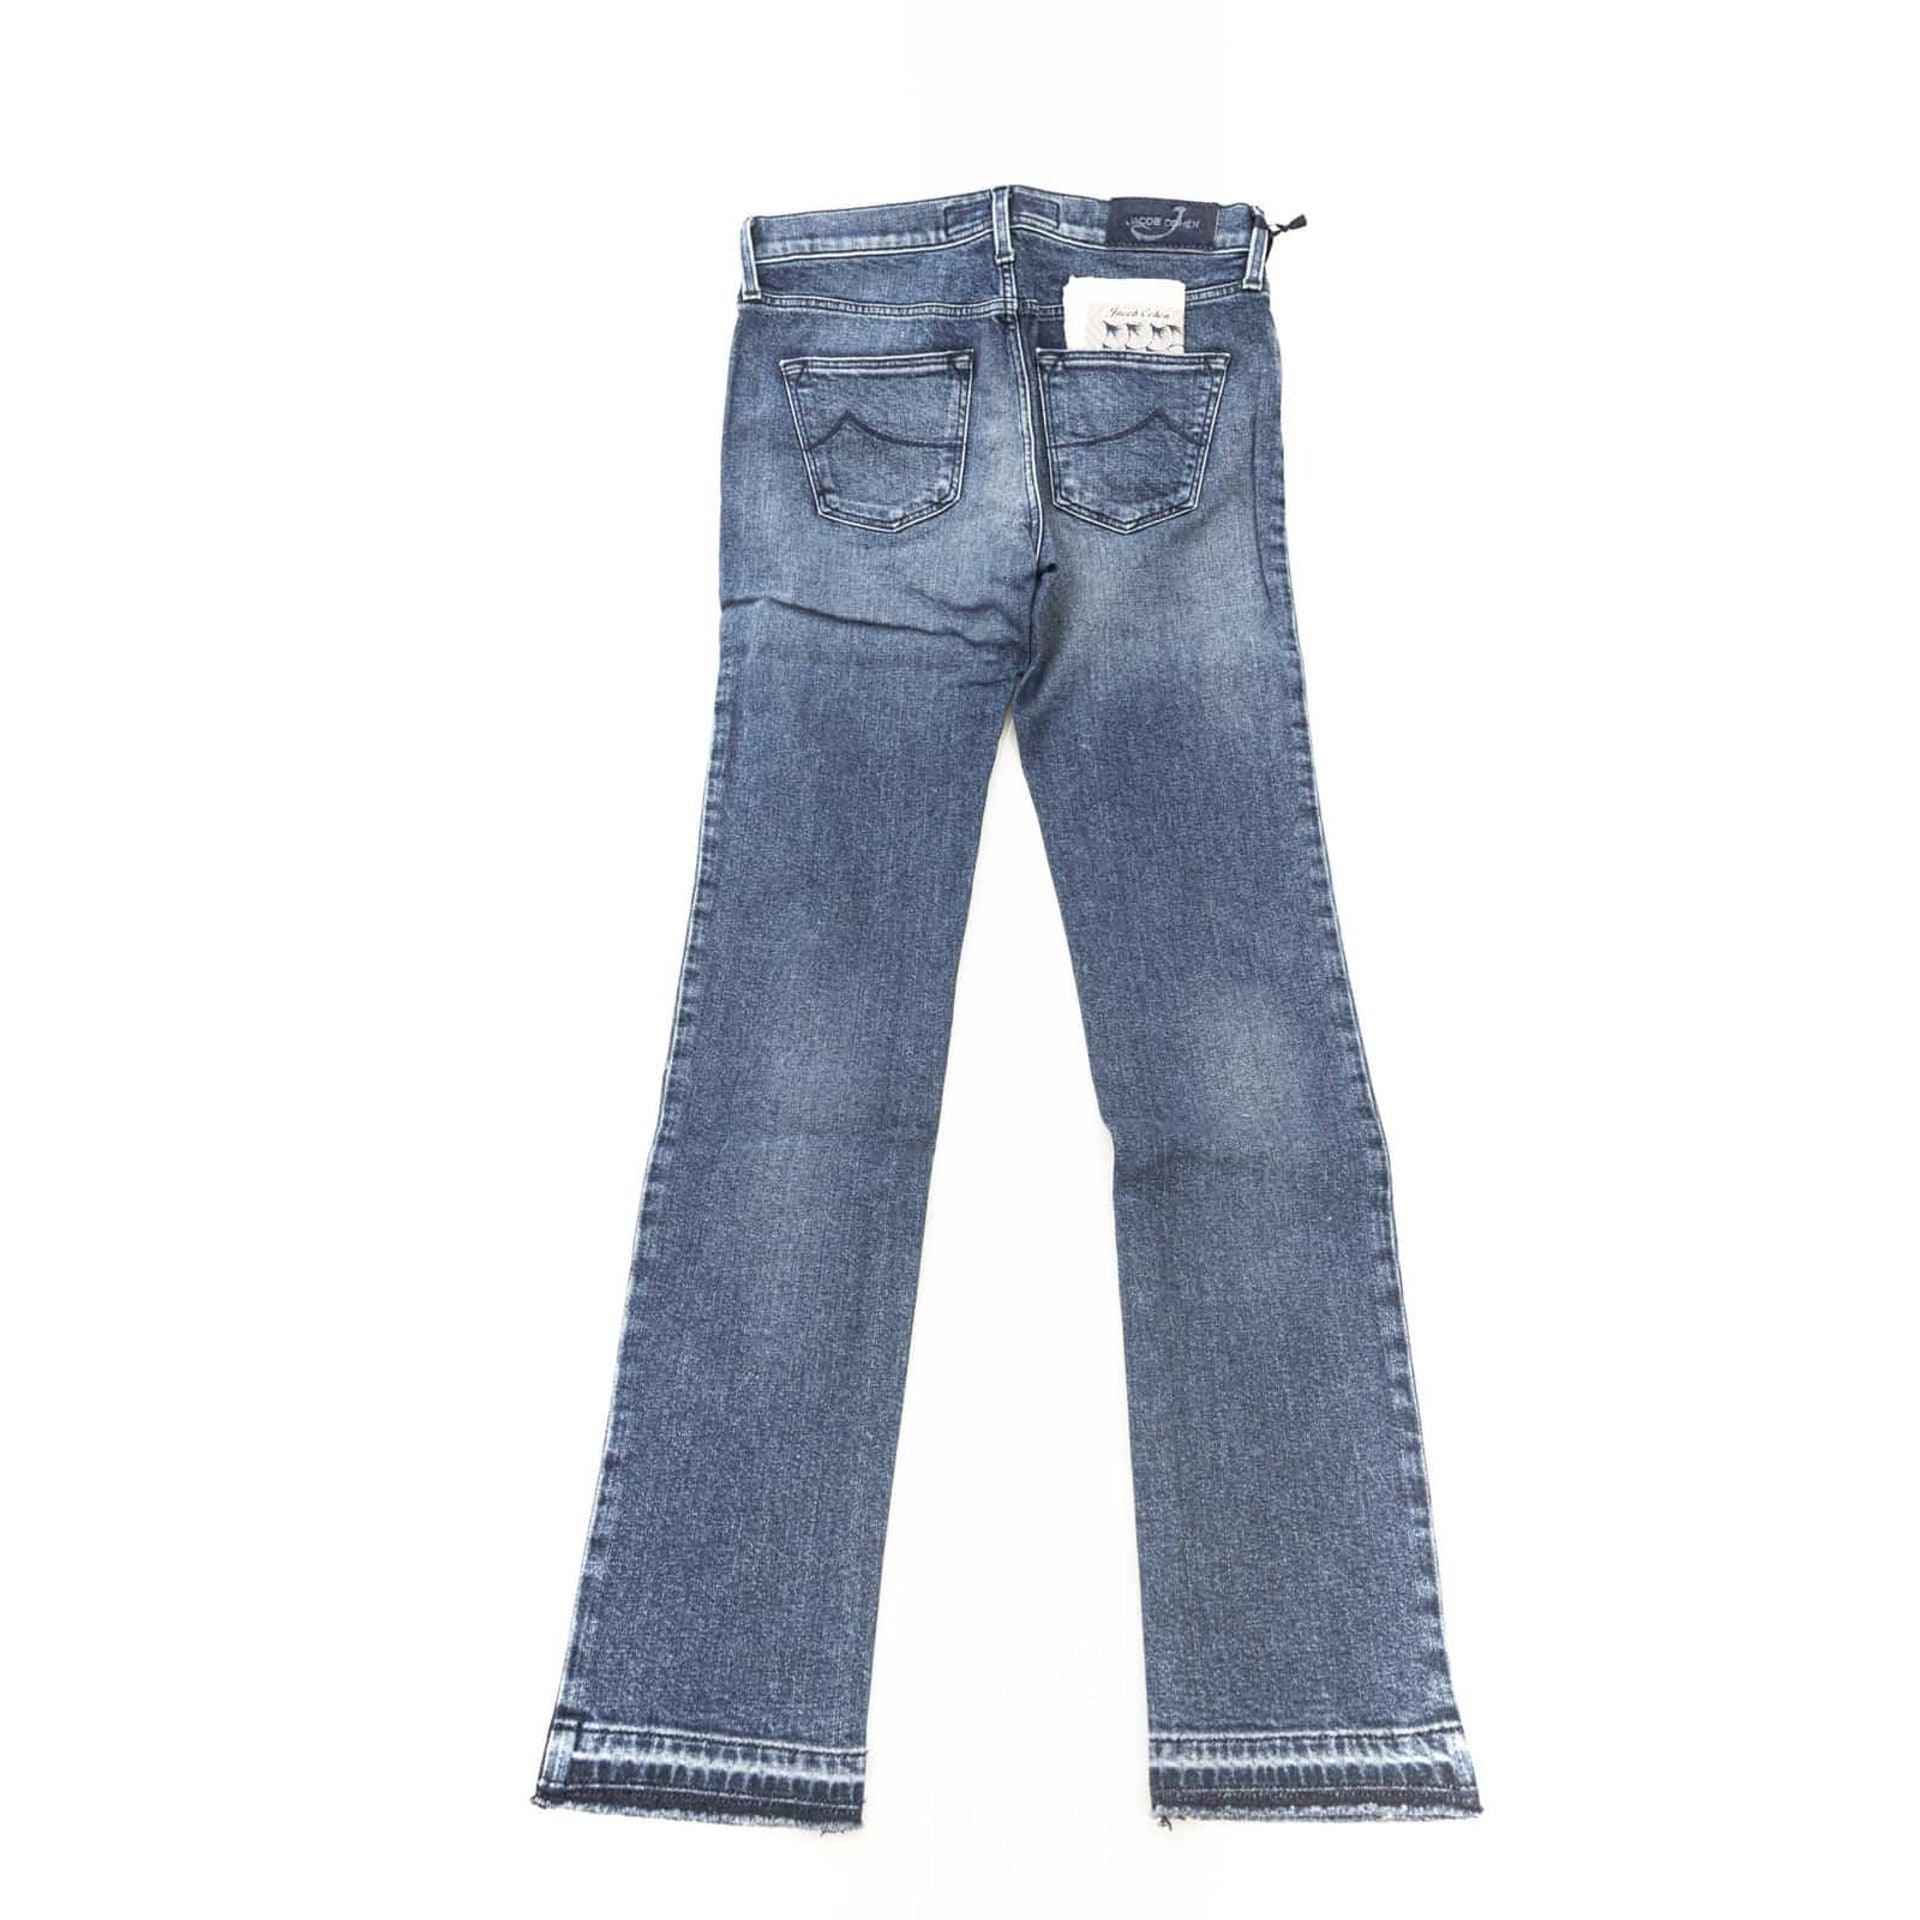 Jacob Cohen Jeans - TheNumber1Shop.com